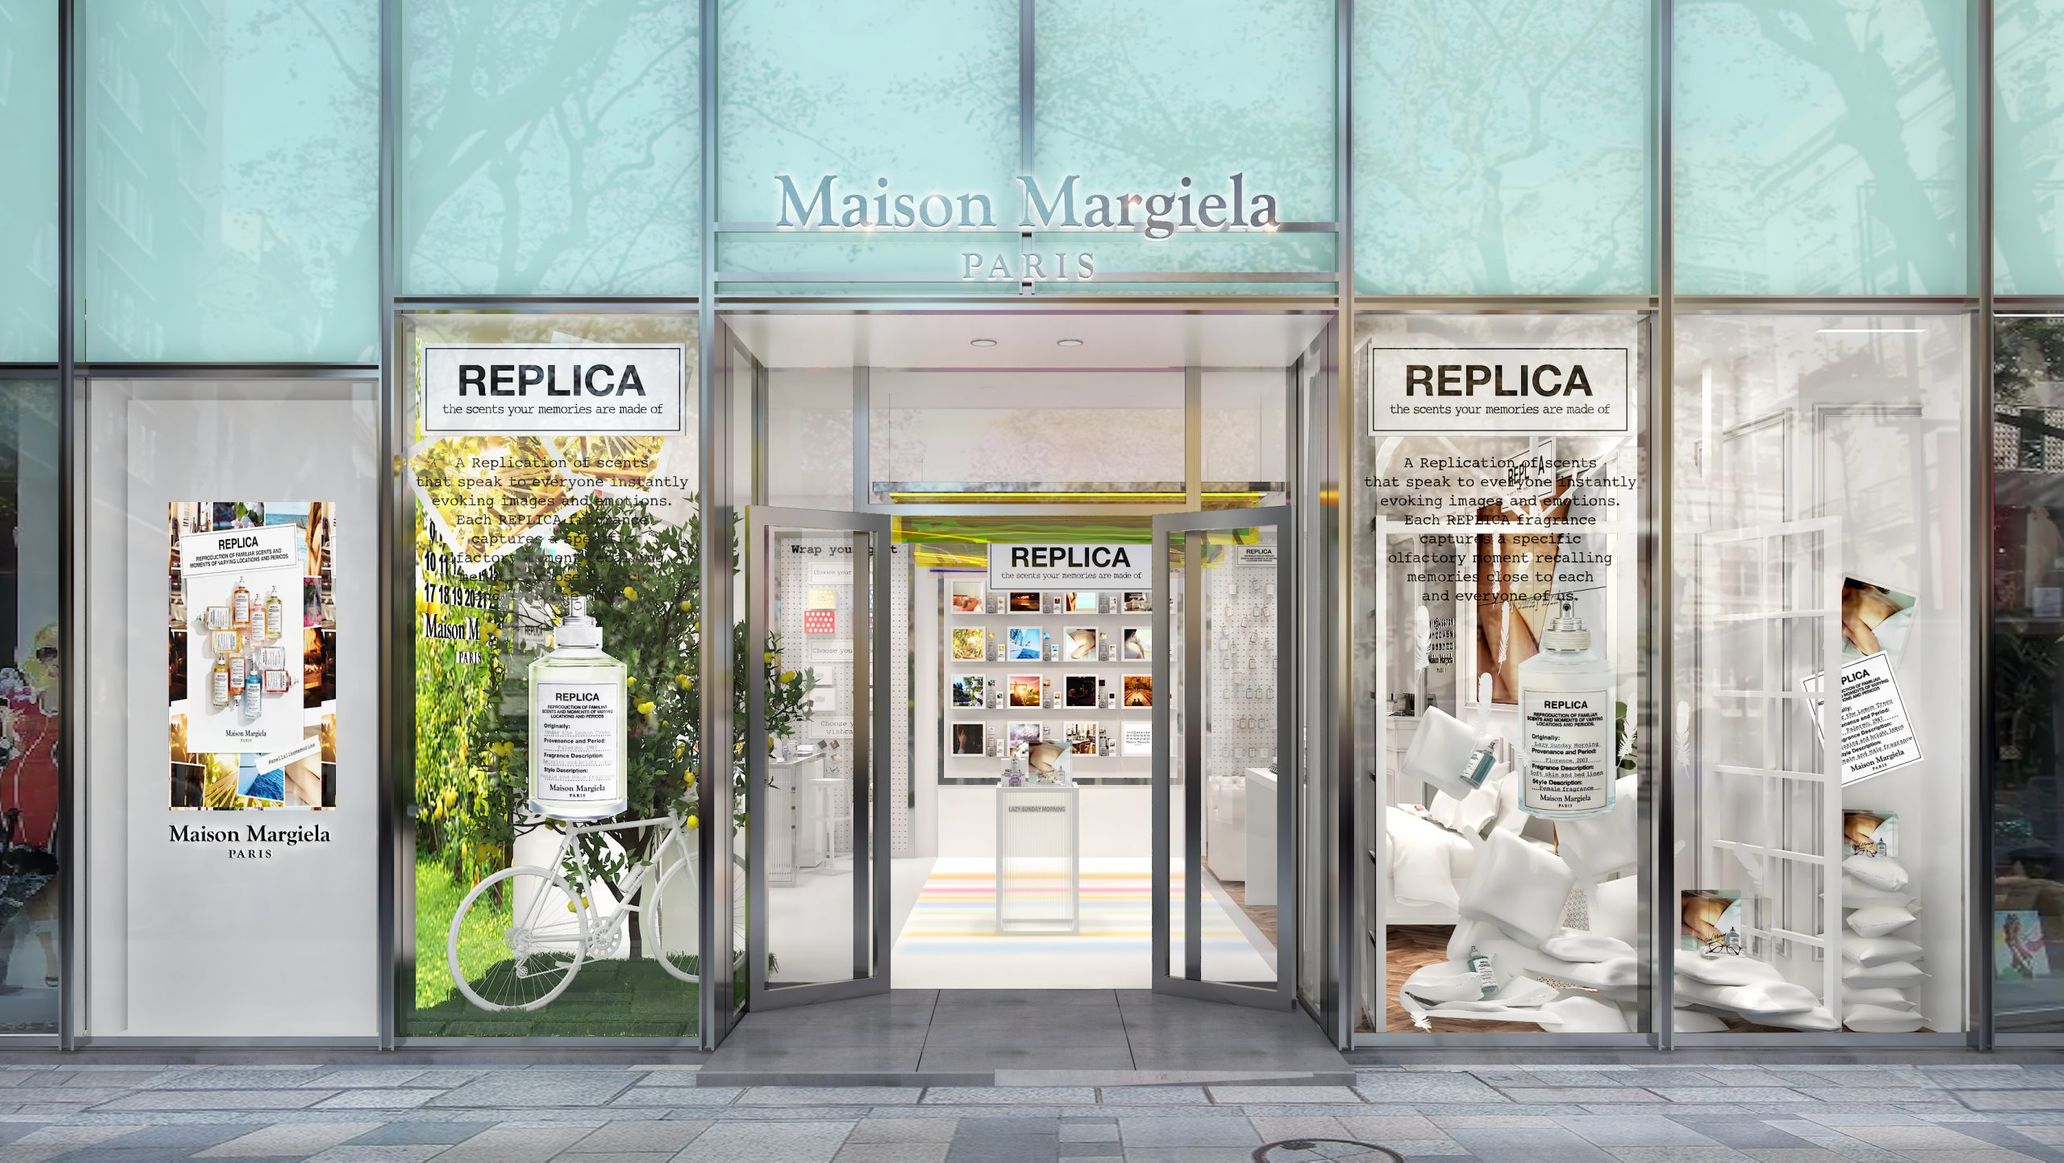 「メゾン マルジェラ」のフレグランス“レプリカ”のポップアップストアが表参道ヒルズにオープン - TOKION